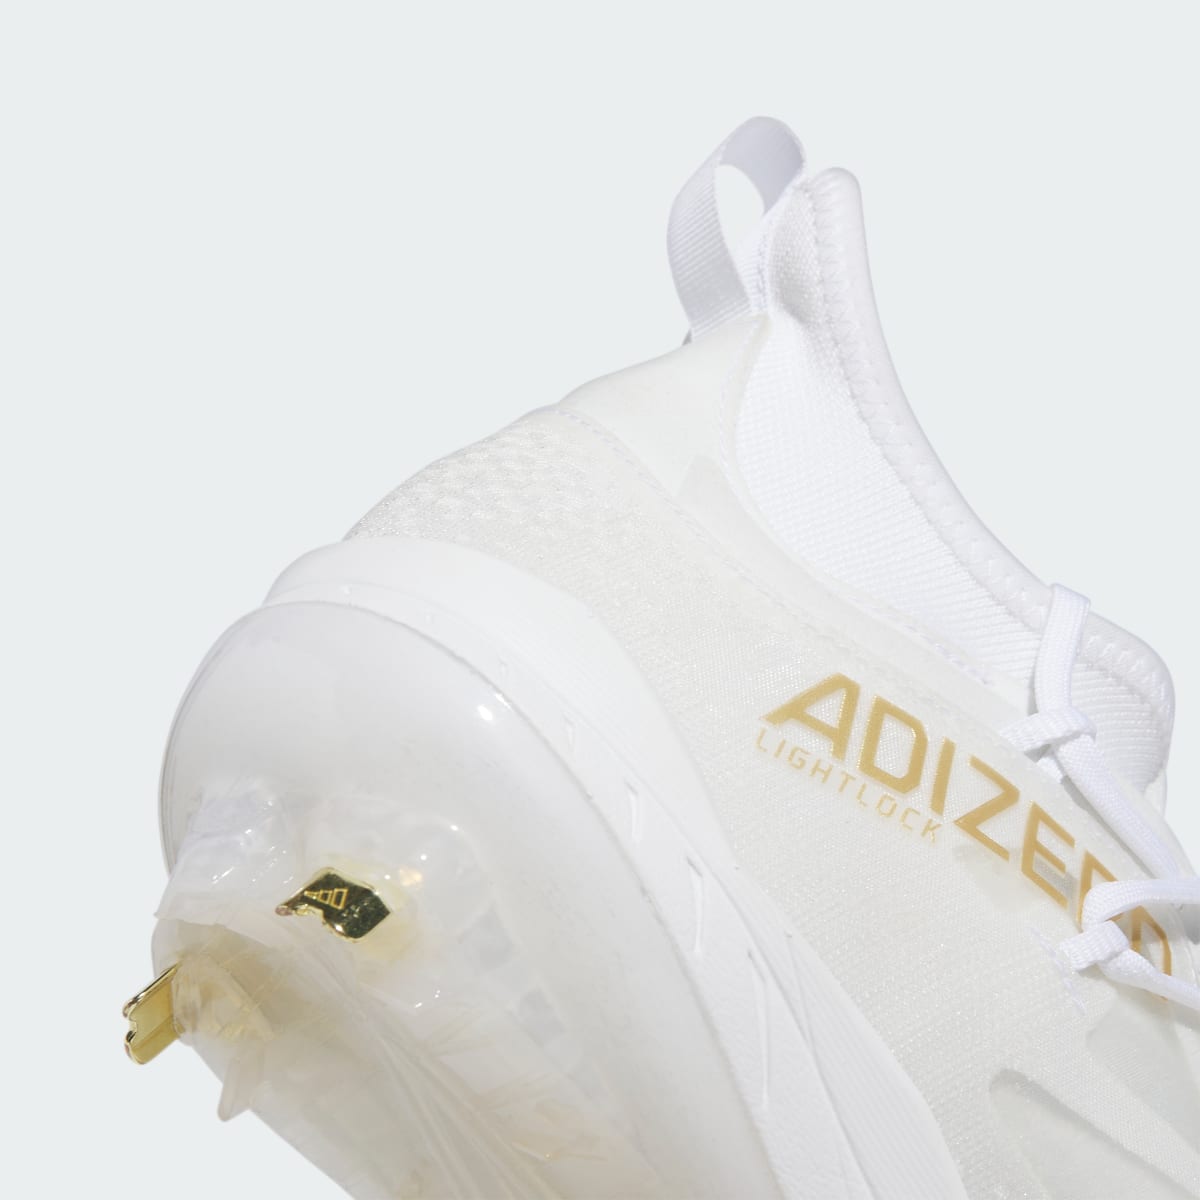 Adidas Adizero Afterburner 9 NWV Cleats. 9